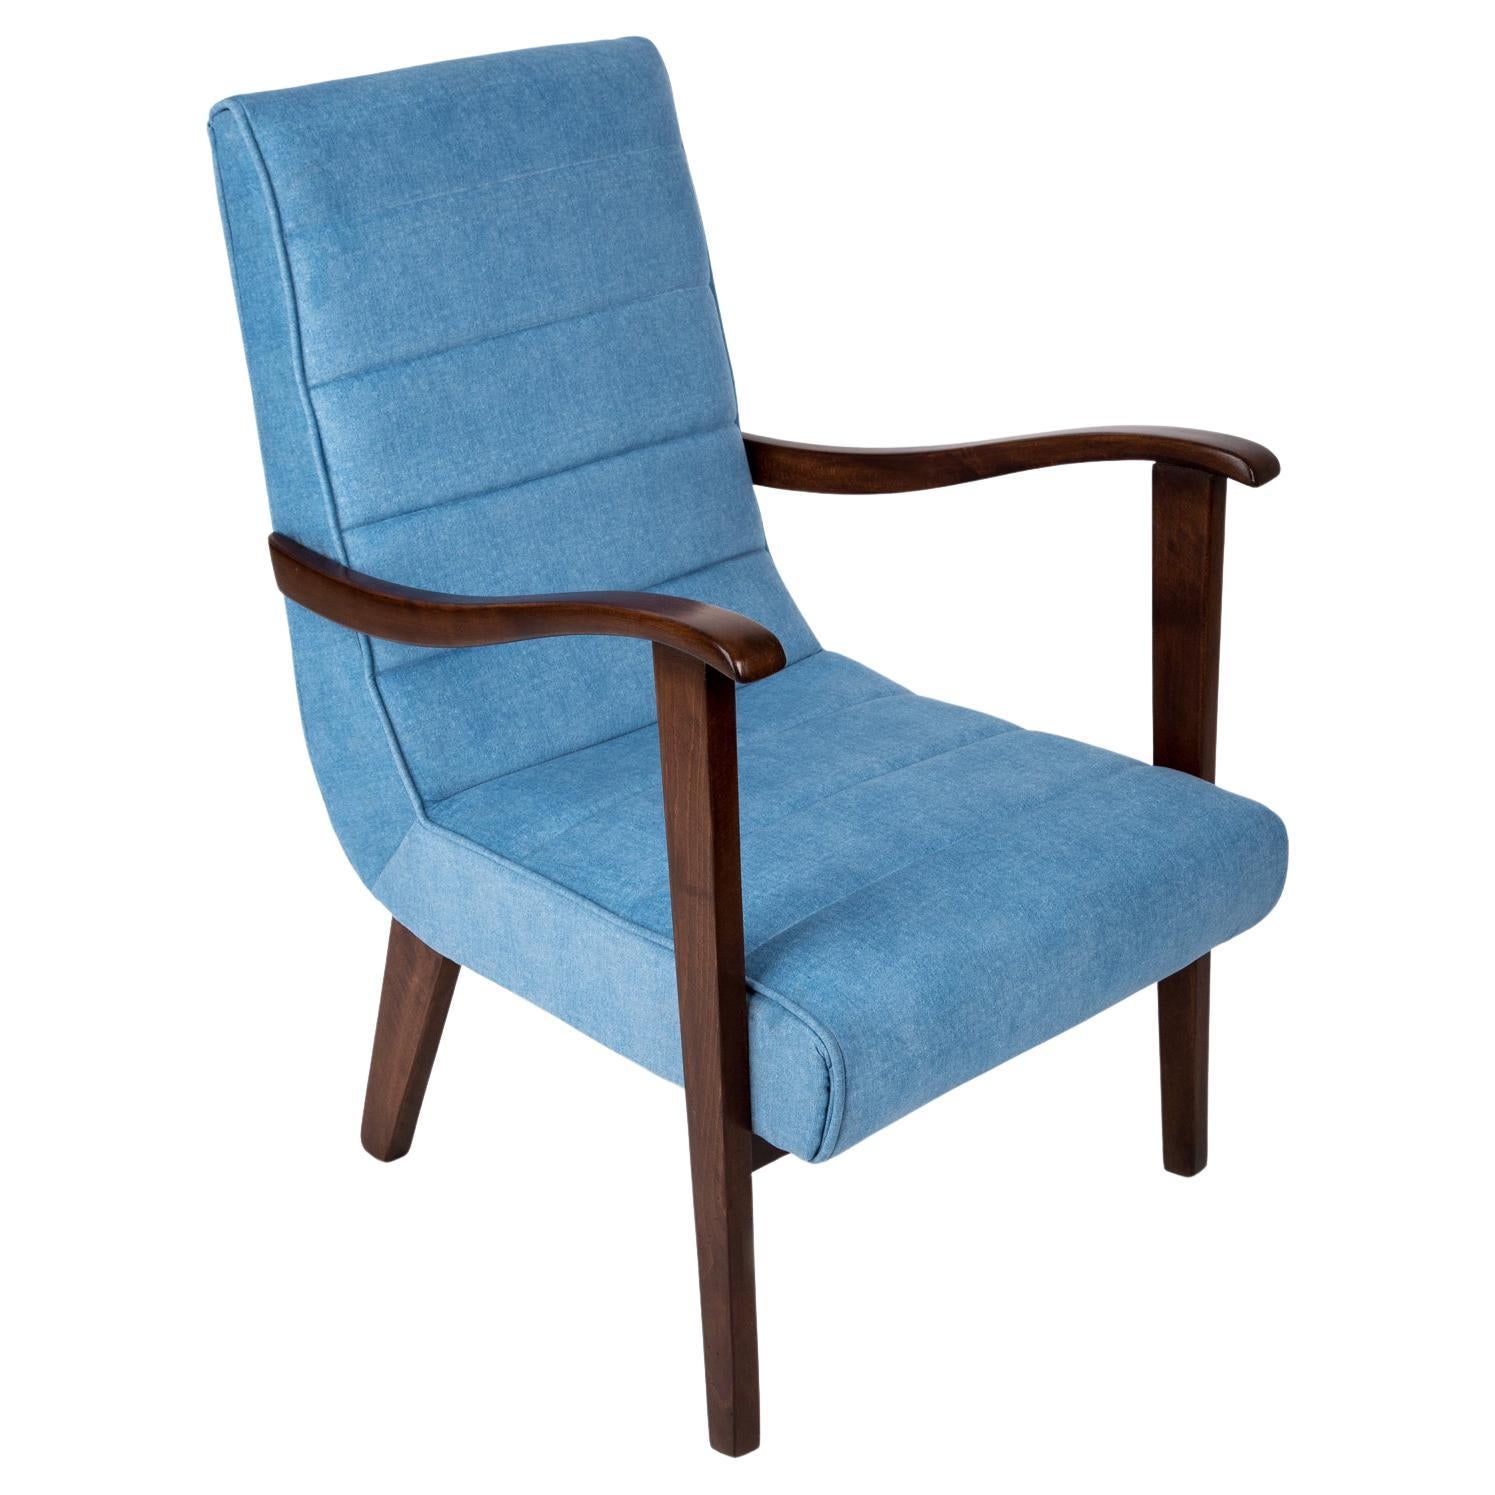 Mid-Century Modern Blauer Sessel von Prudnik Furniture Factory, Polen, 1960er Jahre